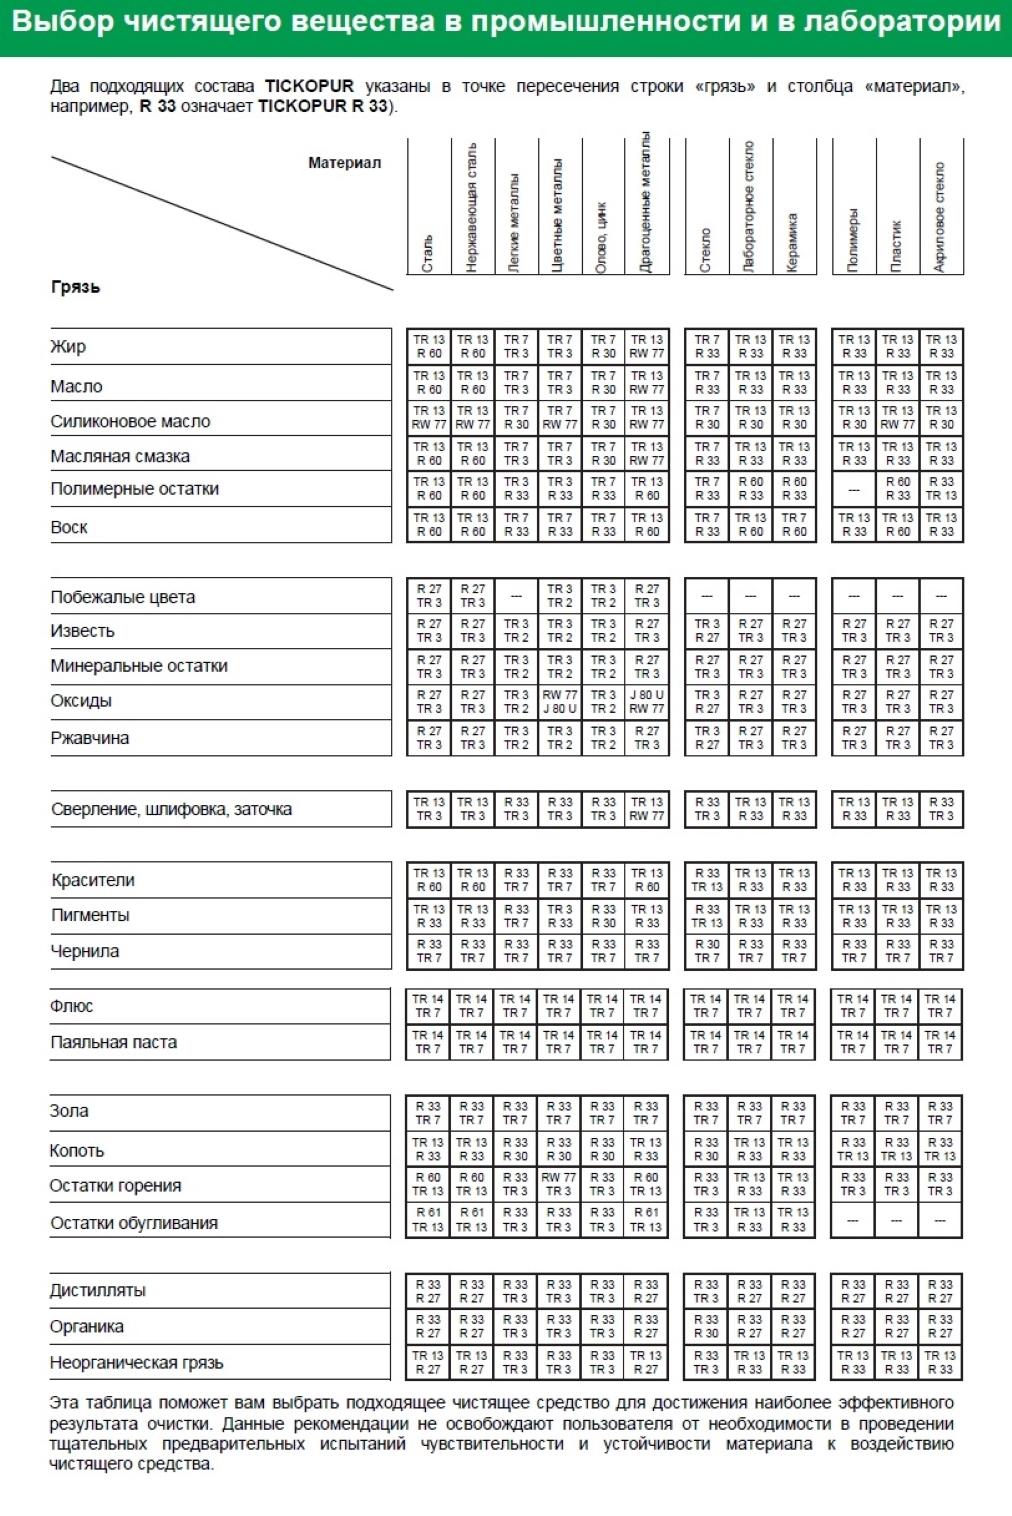 Таблица выбора чистящего вещества TR 2 TICKOPUR